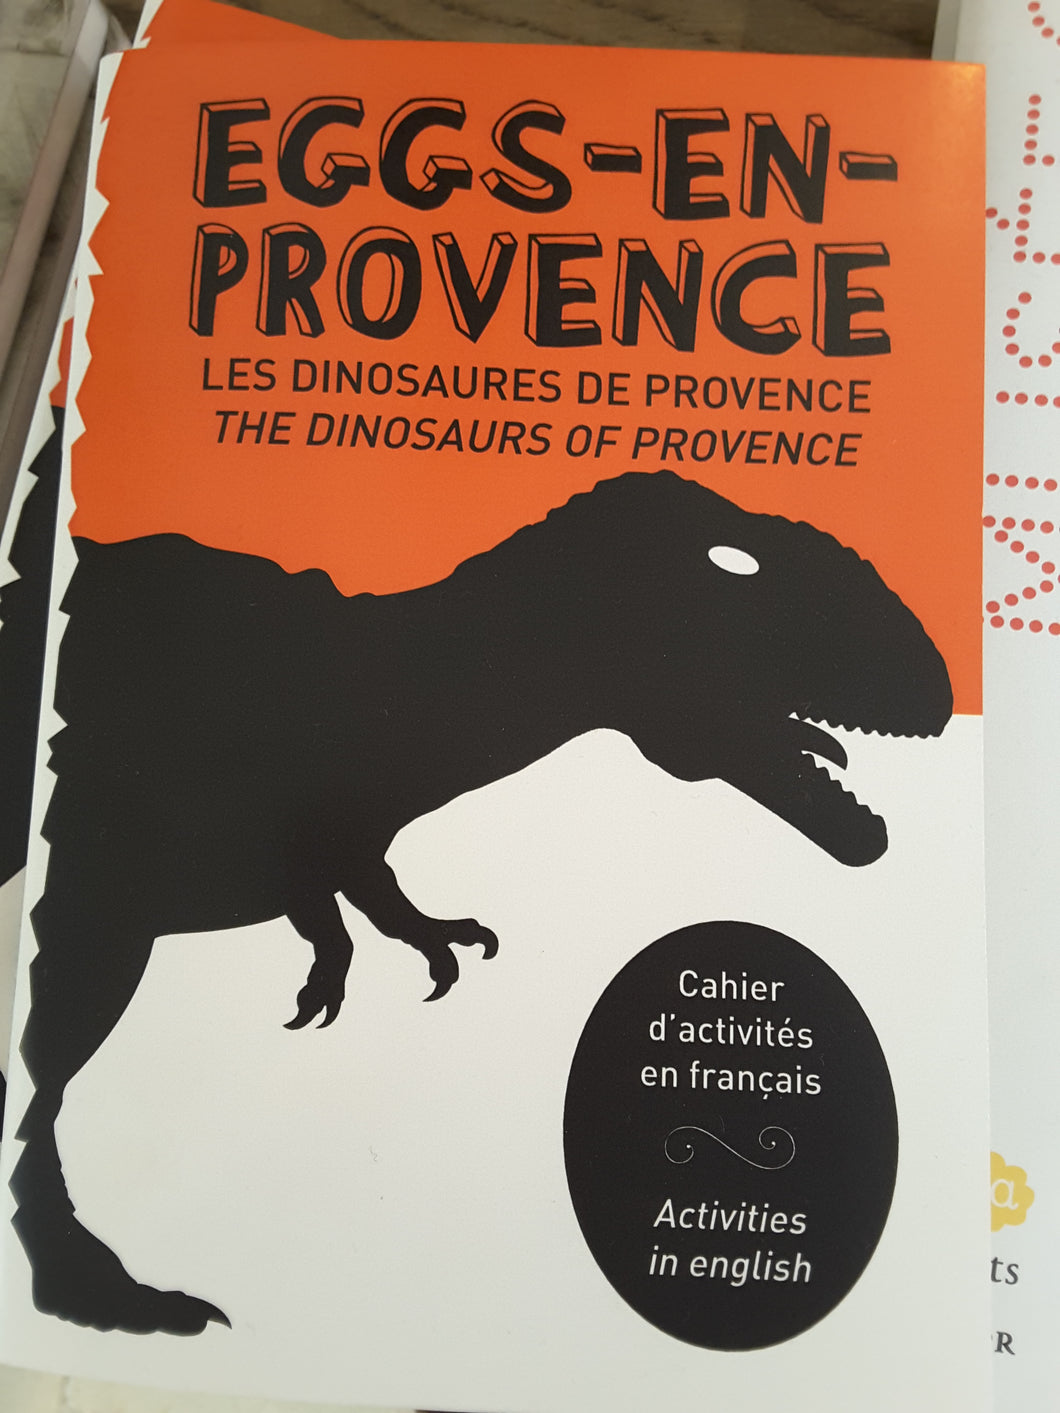 Cahier d'activités  Eggs-en-Provence